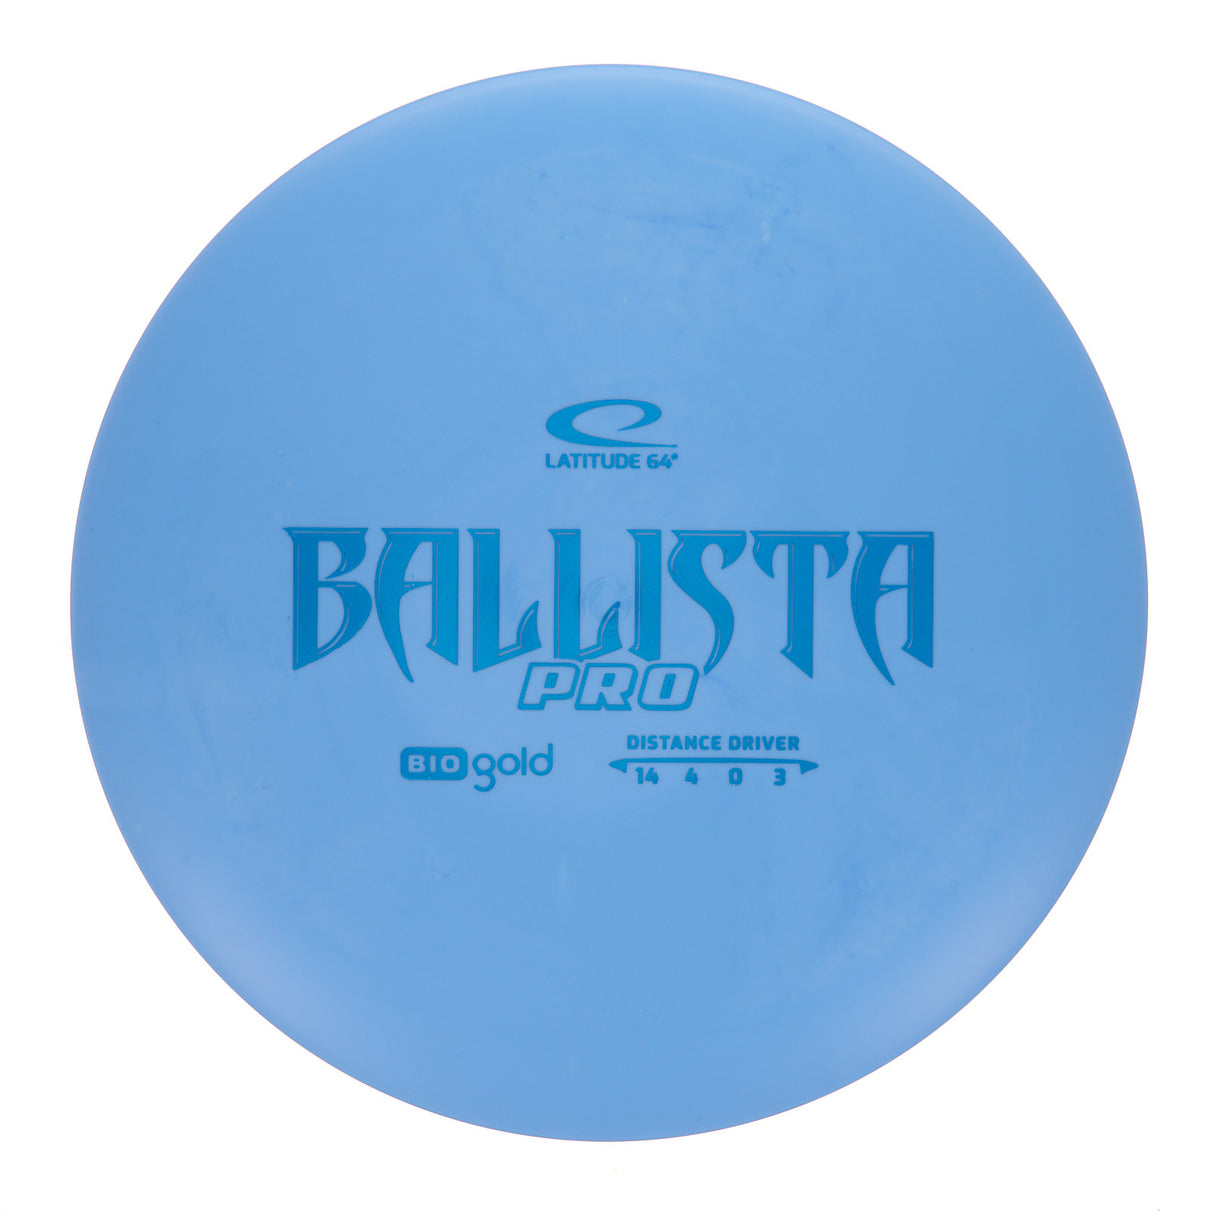 Latitude 64 Ballista Pro - Bio Gold 171g | Style 0002